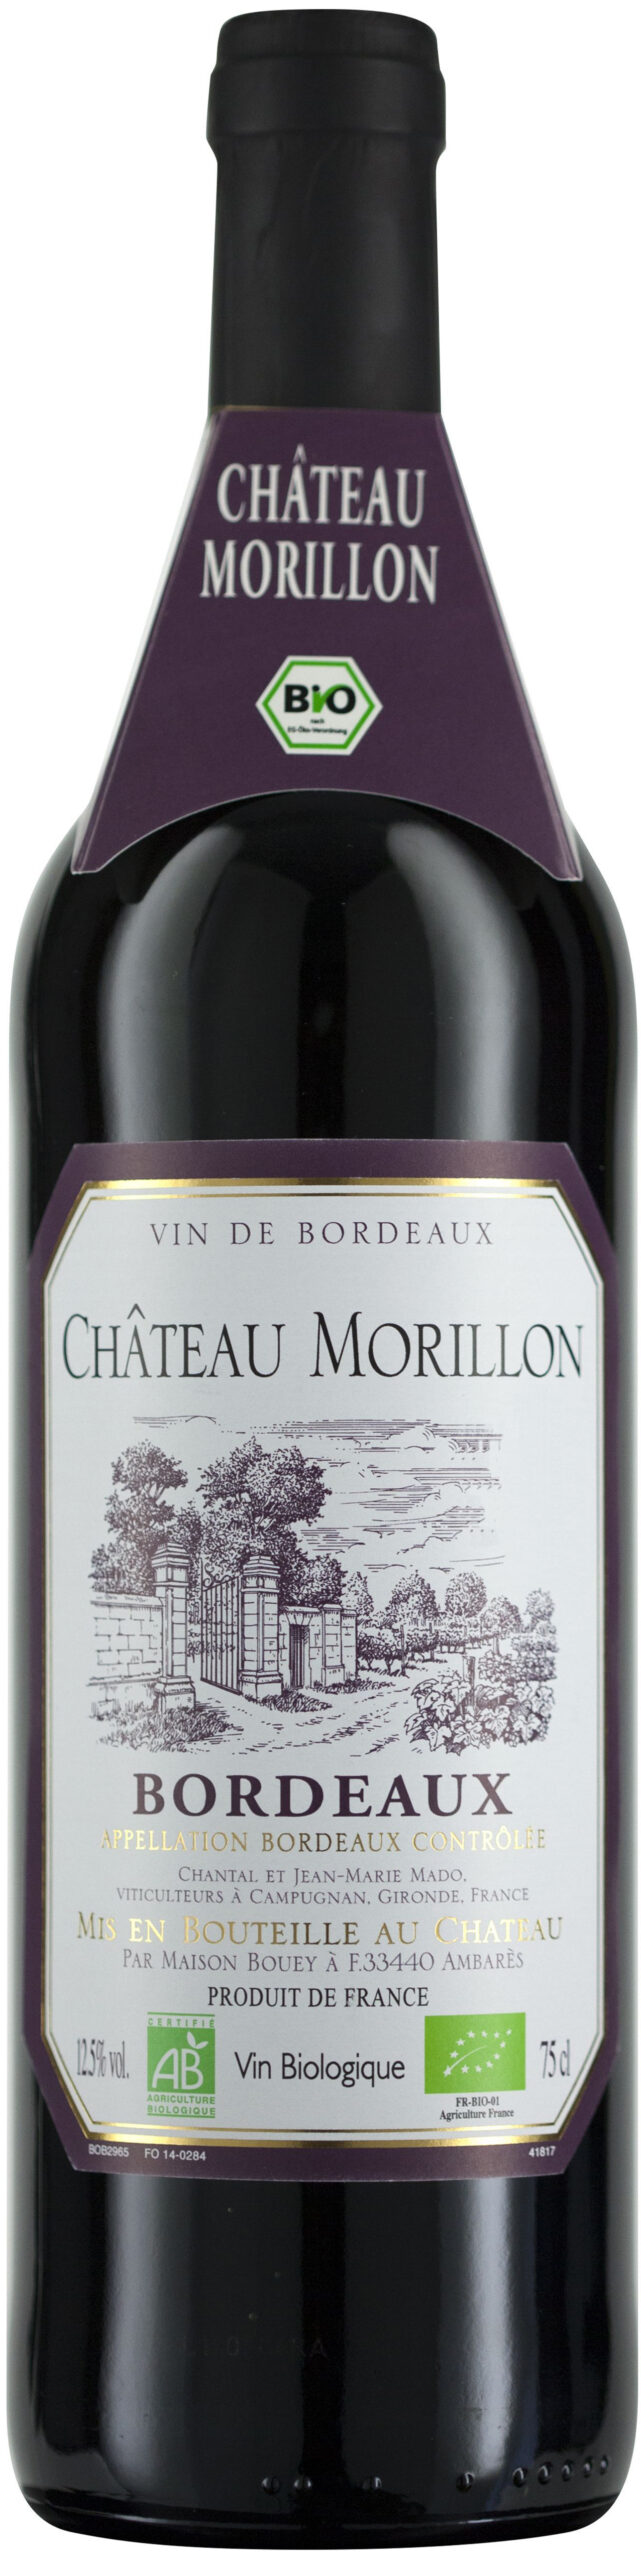 Morillon, Château Bio AOC, Bordeaux Schenk Weine -